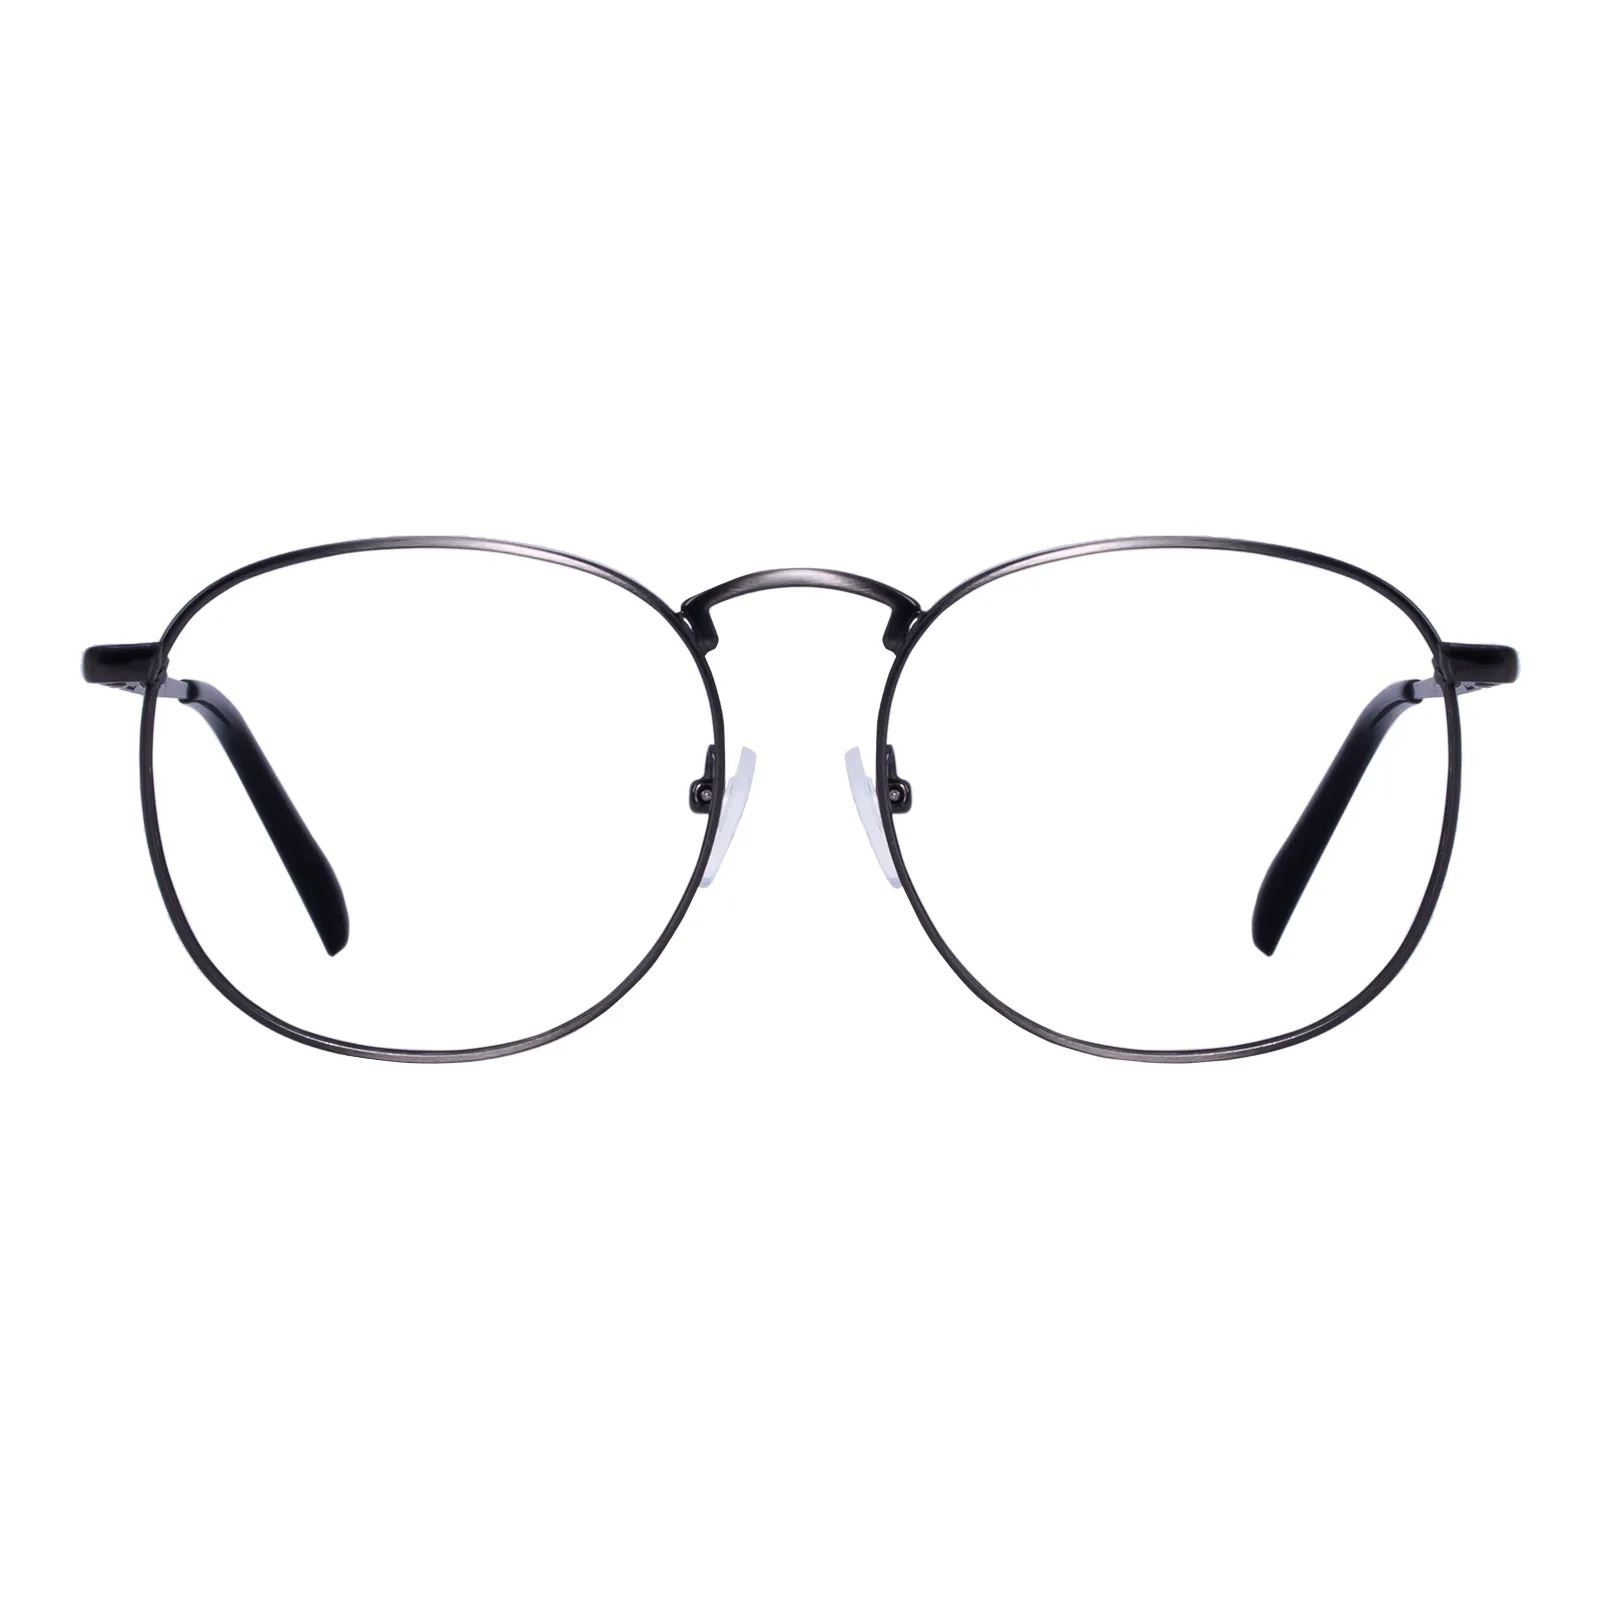 Augustine - Round Bright-Nickel Glasses for Men & Women